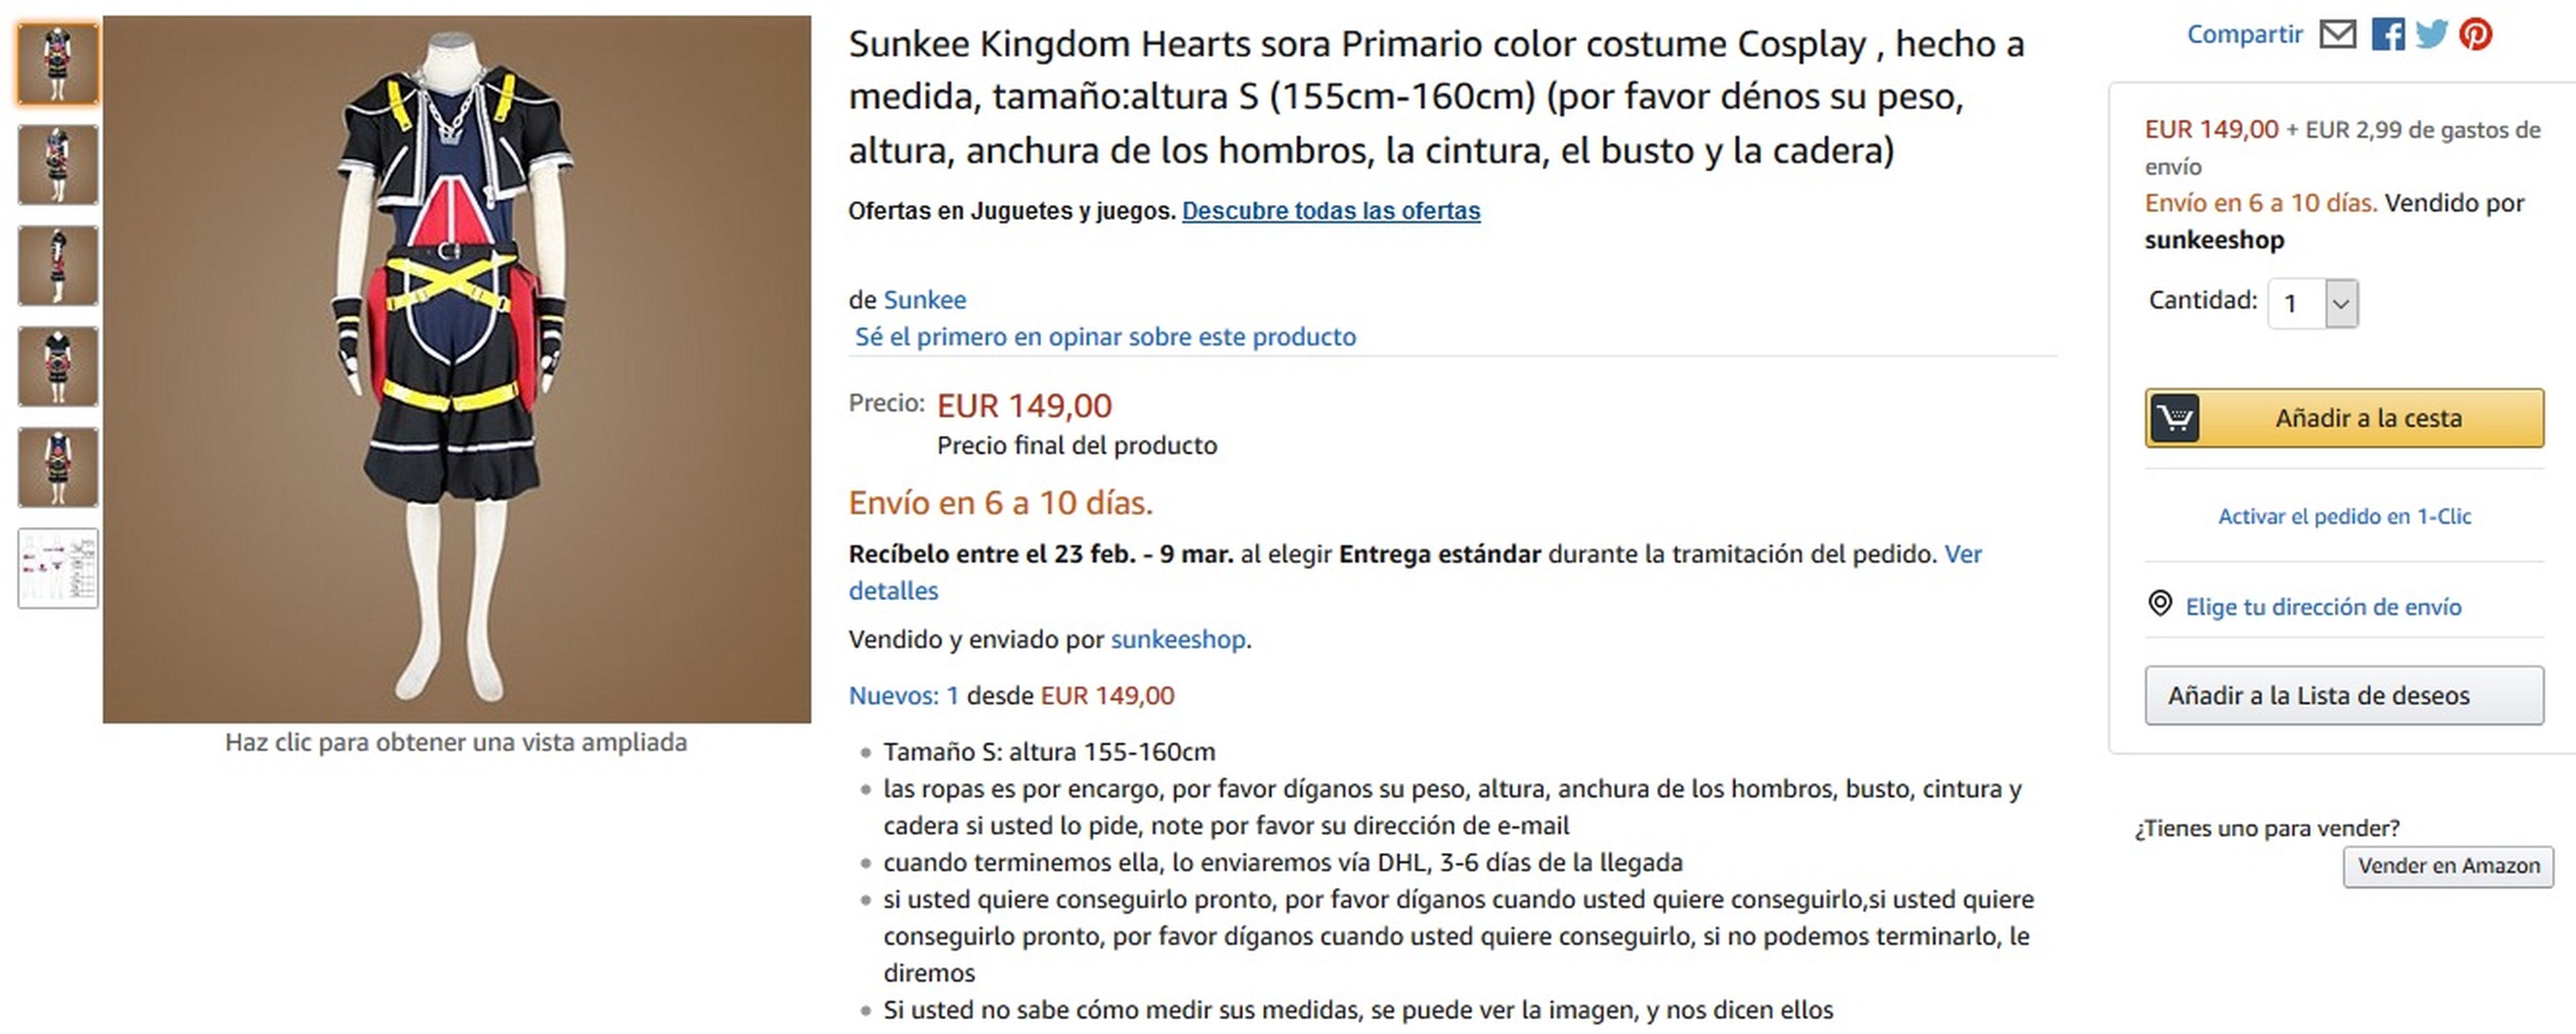 Disfraz de Sora de Kingdom Hearts en Amazon